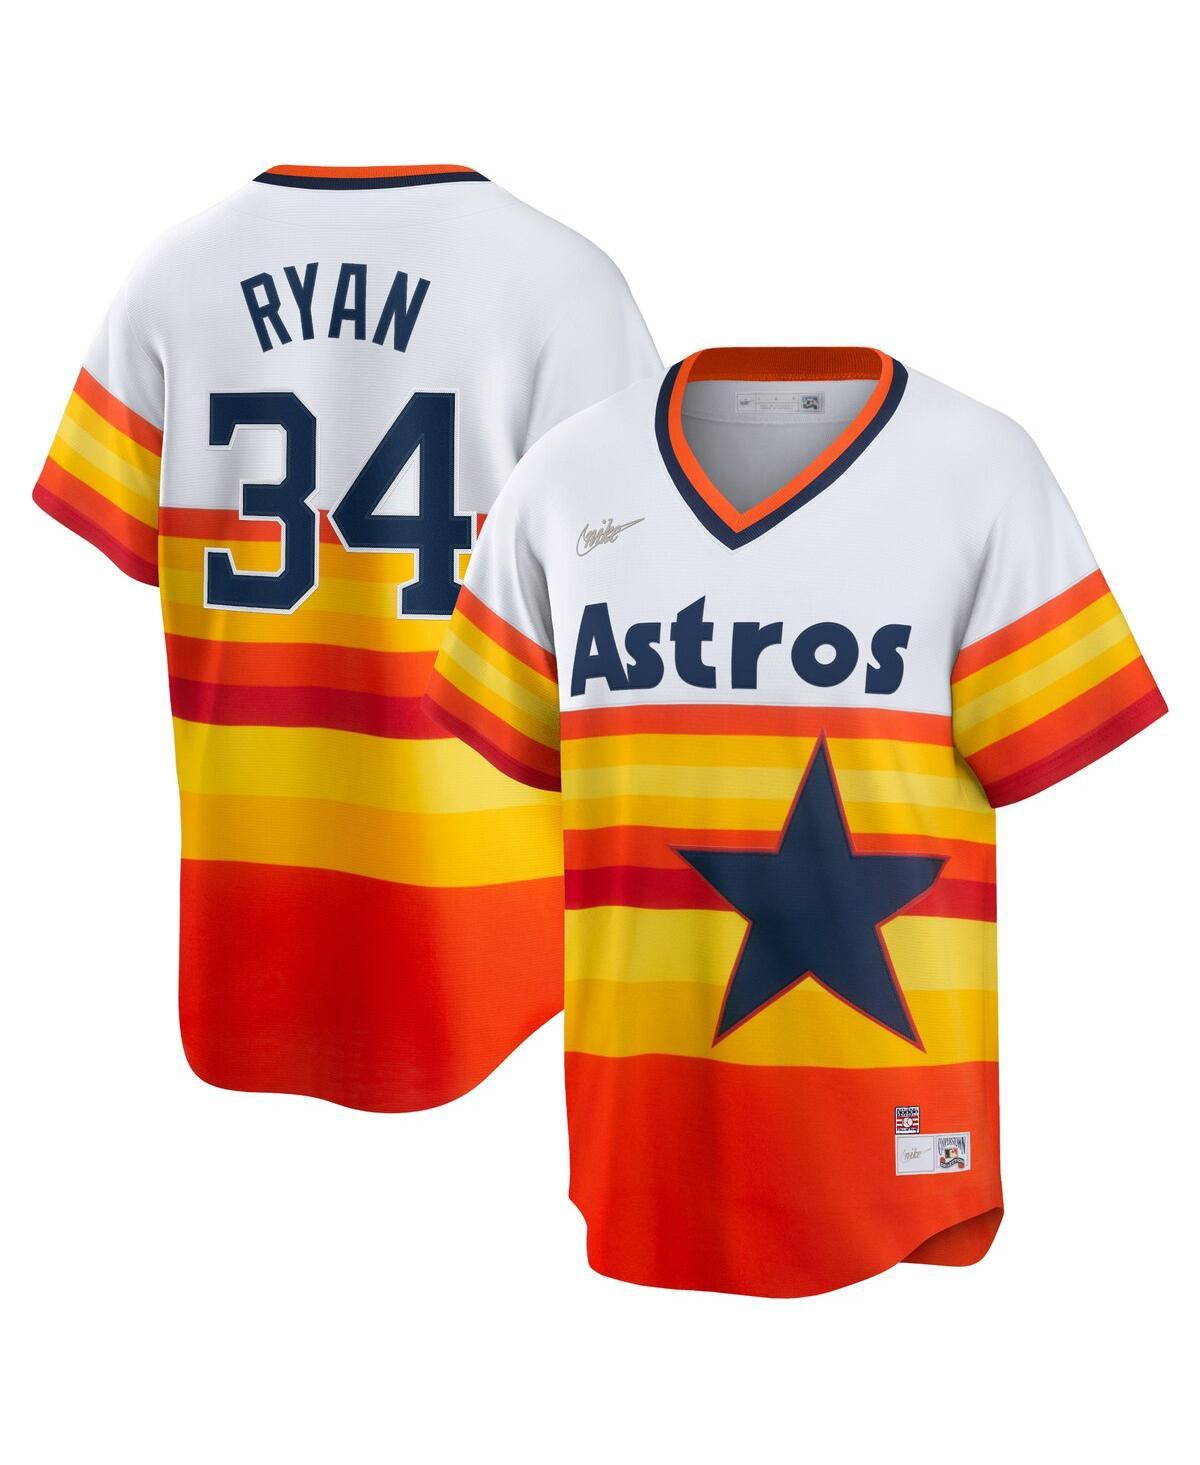 34 Nolan Ryan jersey 1 carlos correa womens jersey Houston Astros